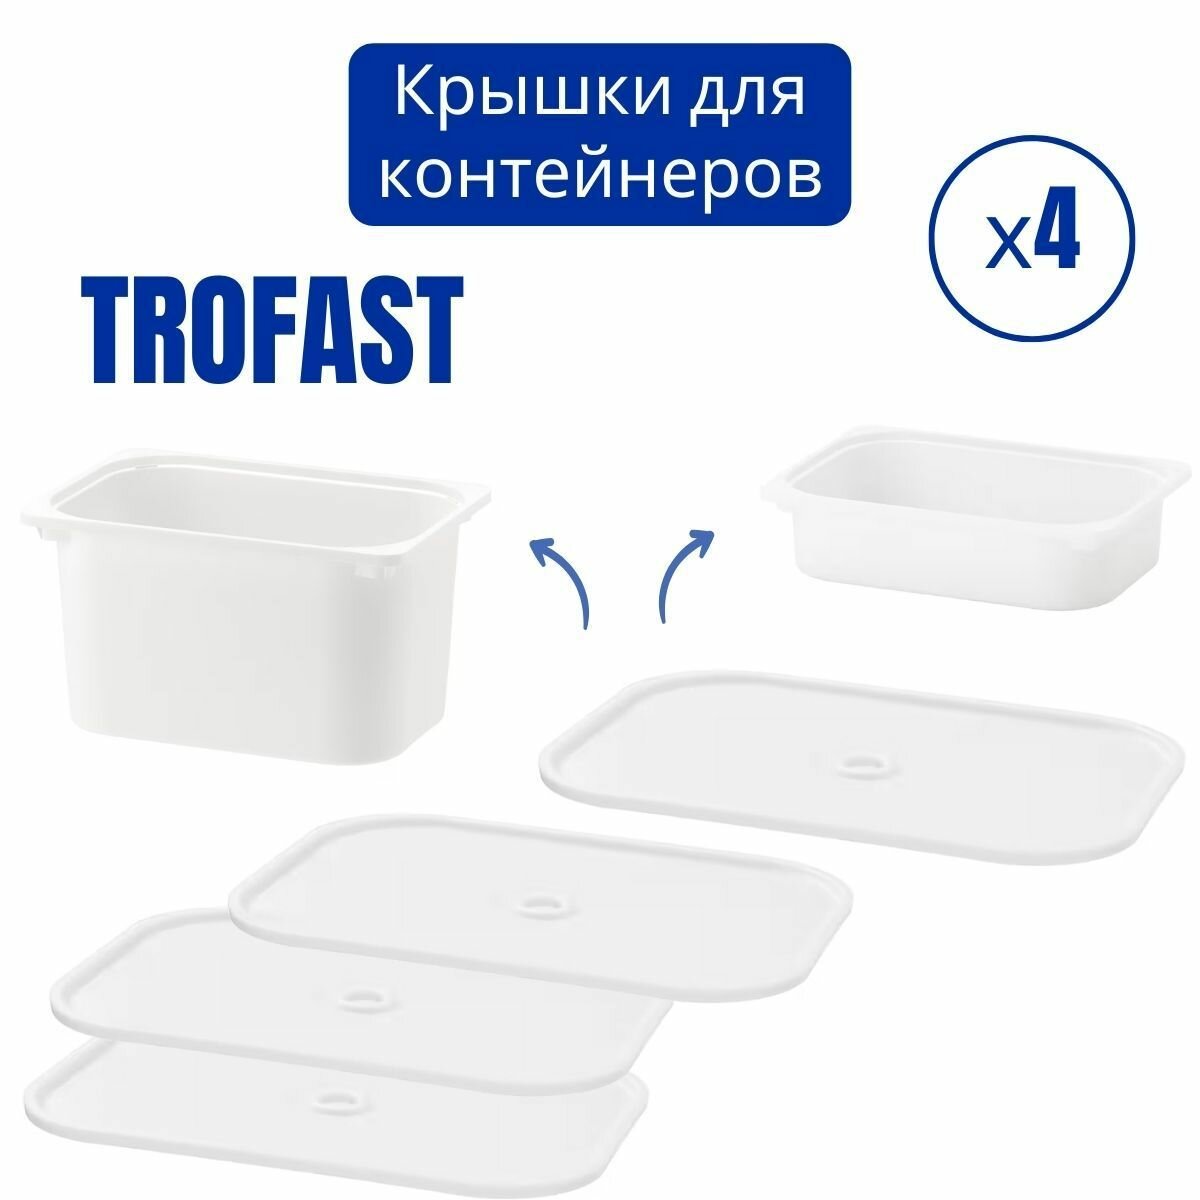 Крышка для контейнера труфаст икеа набор 4 шт, белый, контейнер для хранения TROFAST IKEA